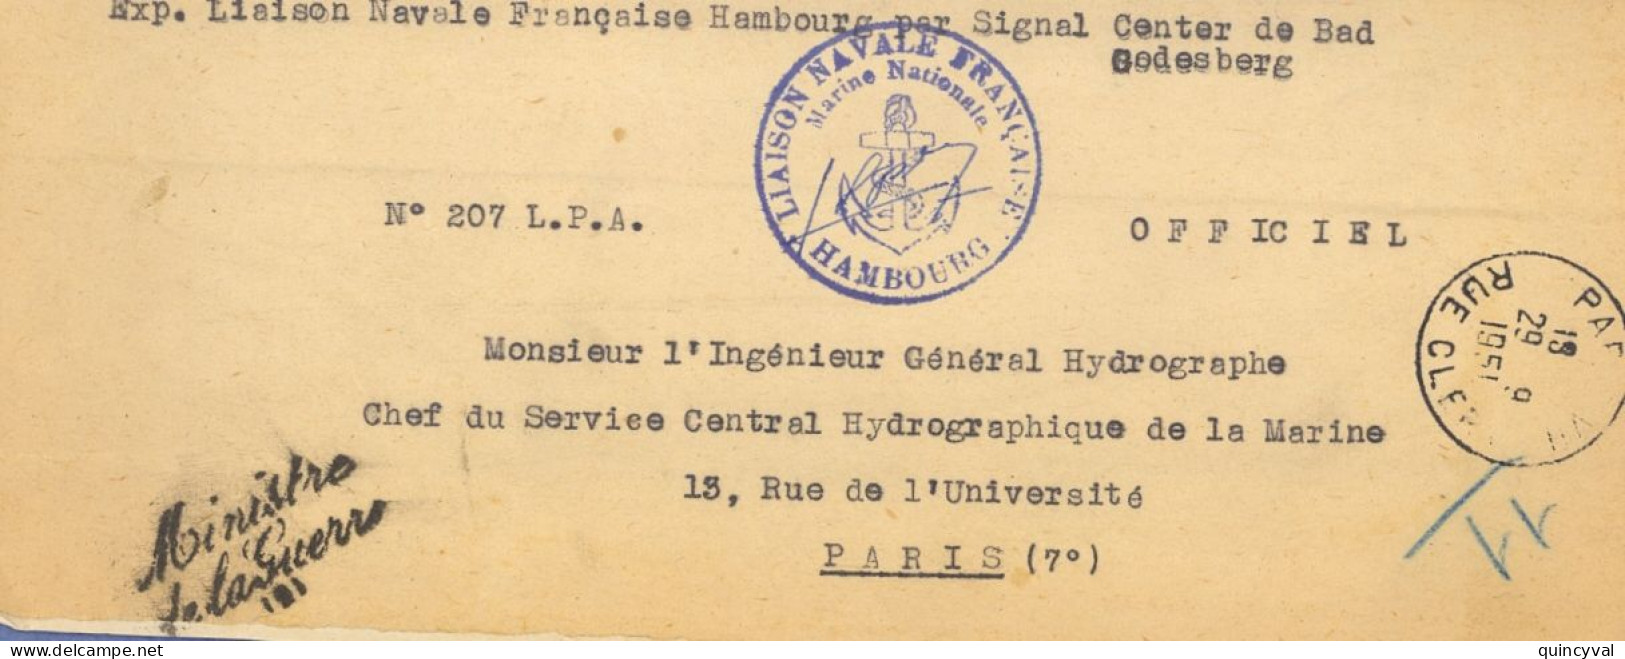 Liaison Navale Française Hambourg Signal Center  Bad Godesberg Griffe Ministre De La Guerre 1951 Paris Clery Ancre - Seepost